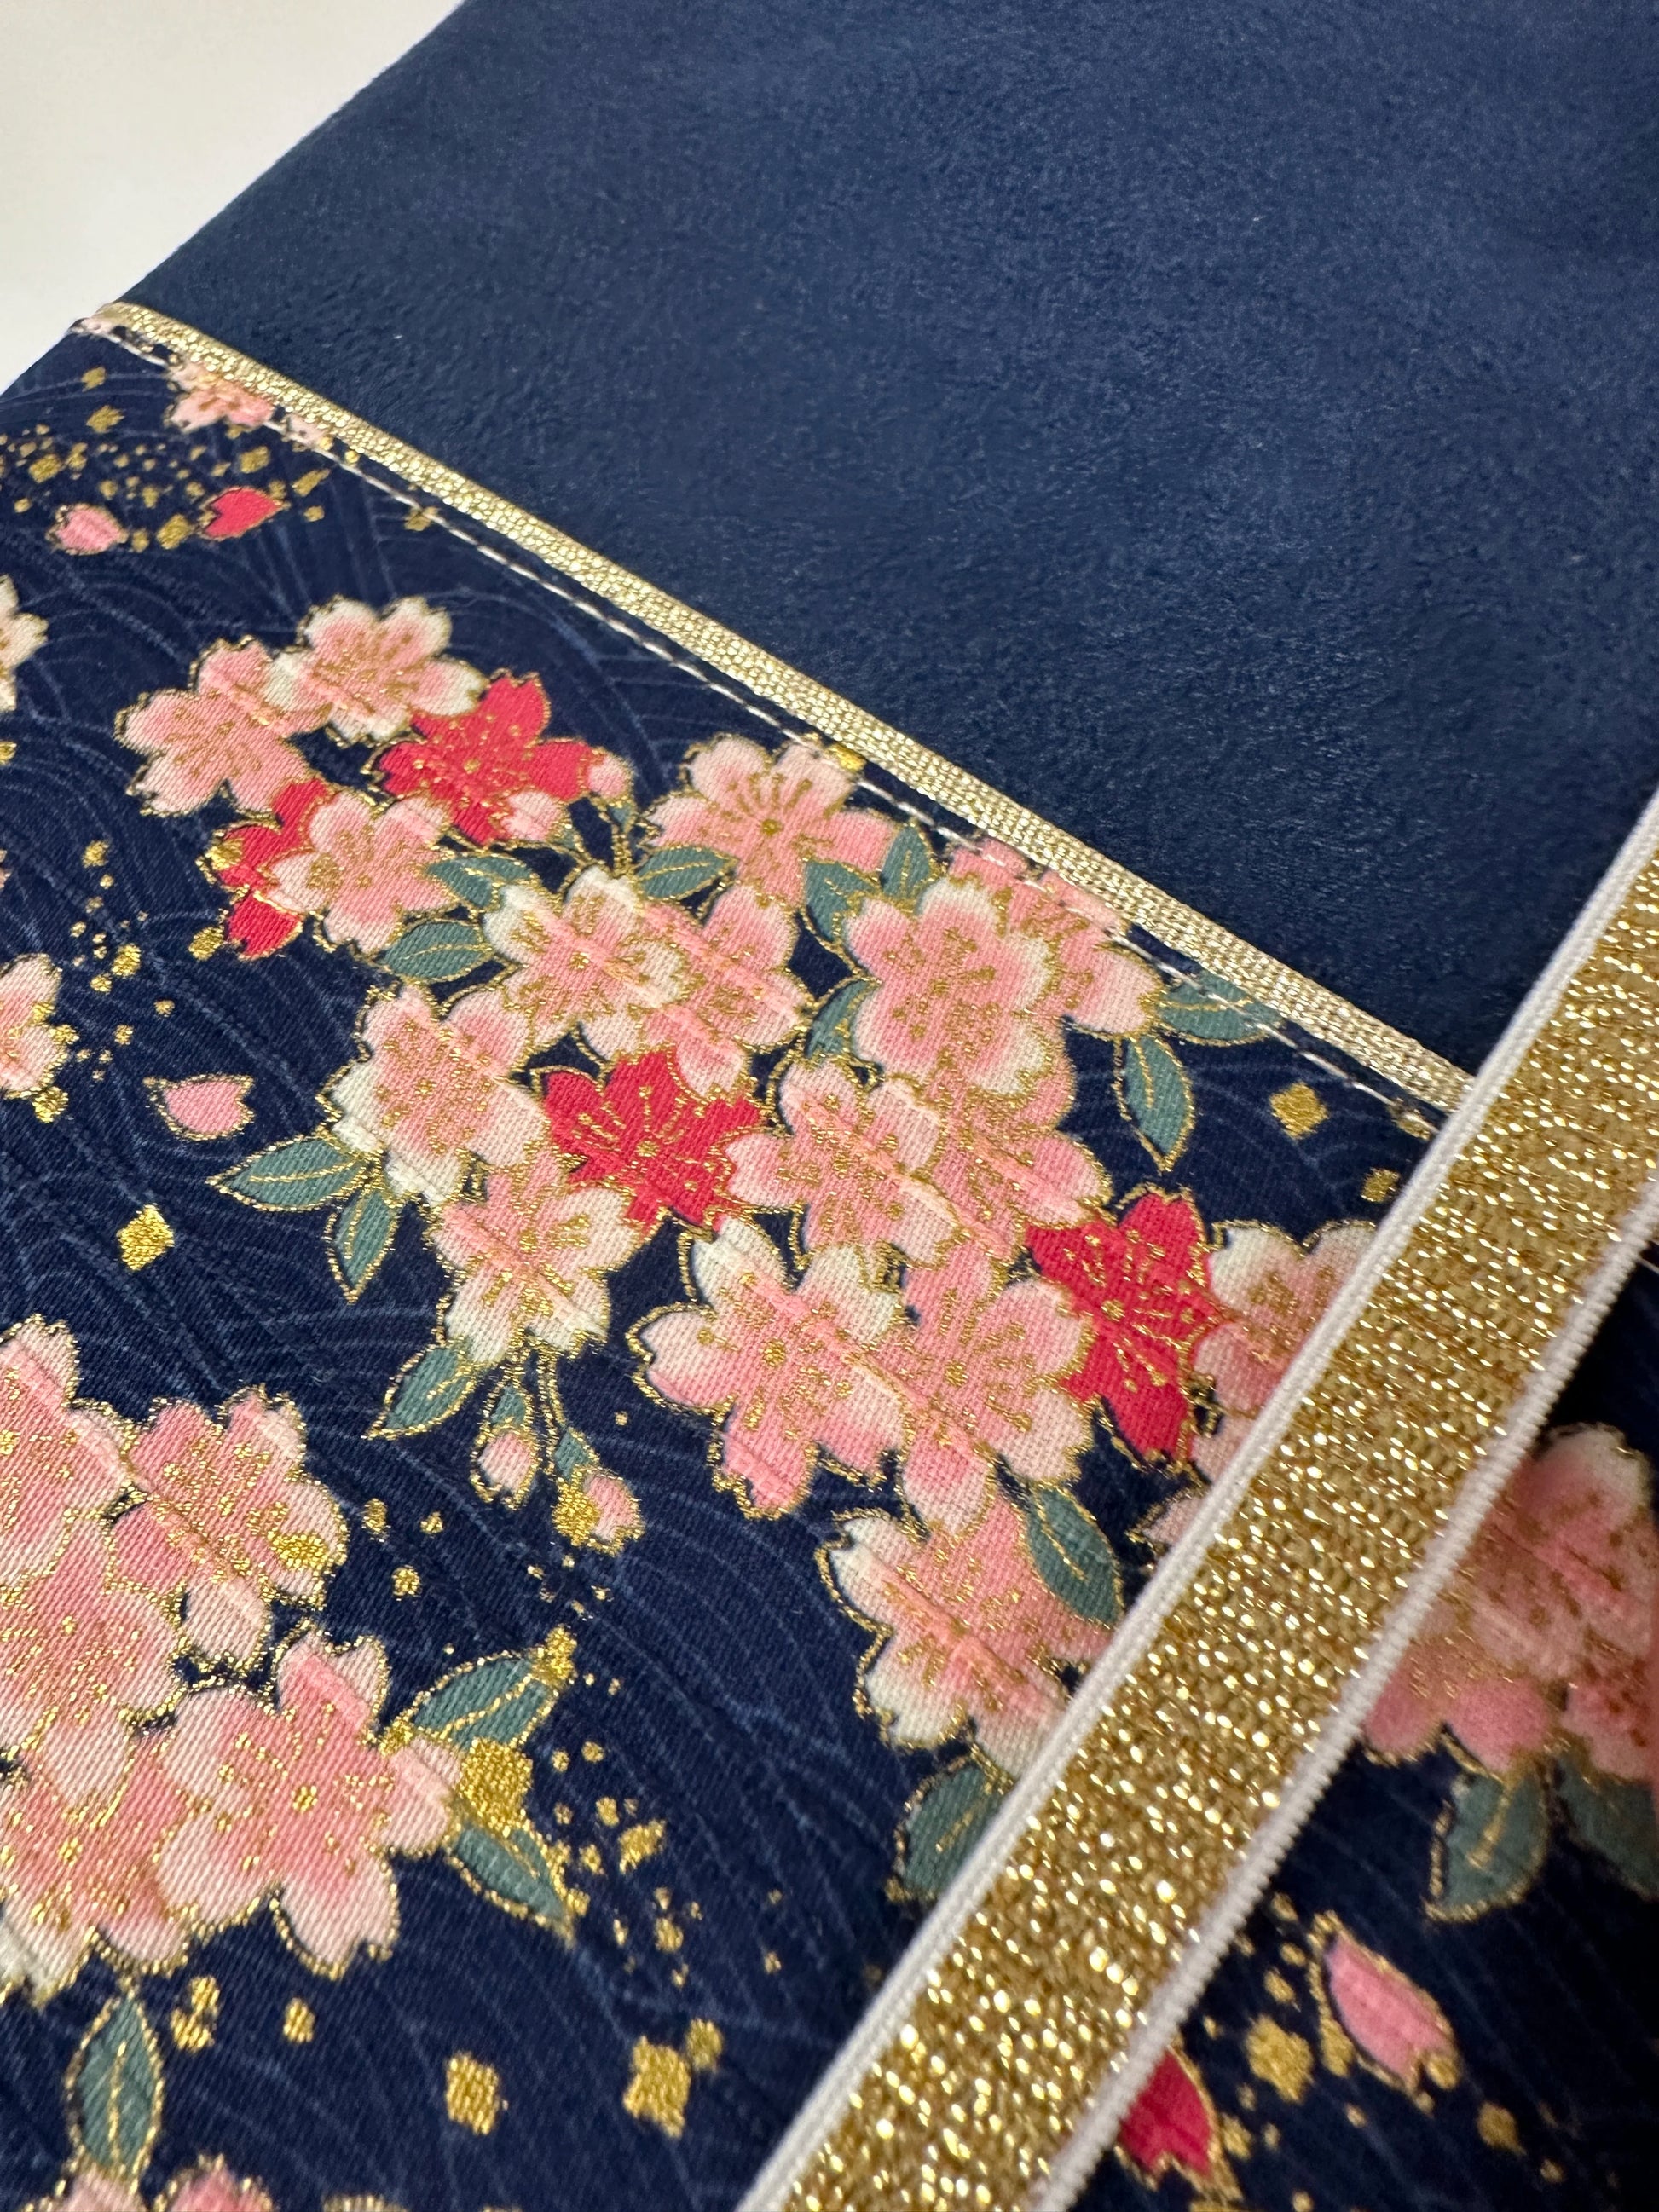 Vue détaillée du tissu japonais sur le protège-agenda bleu marine en tissu japonais fleuri.